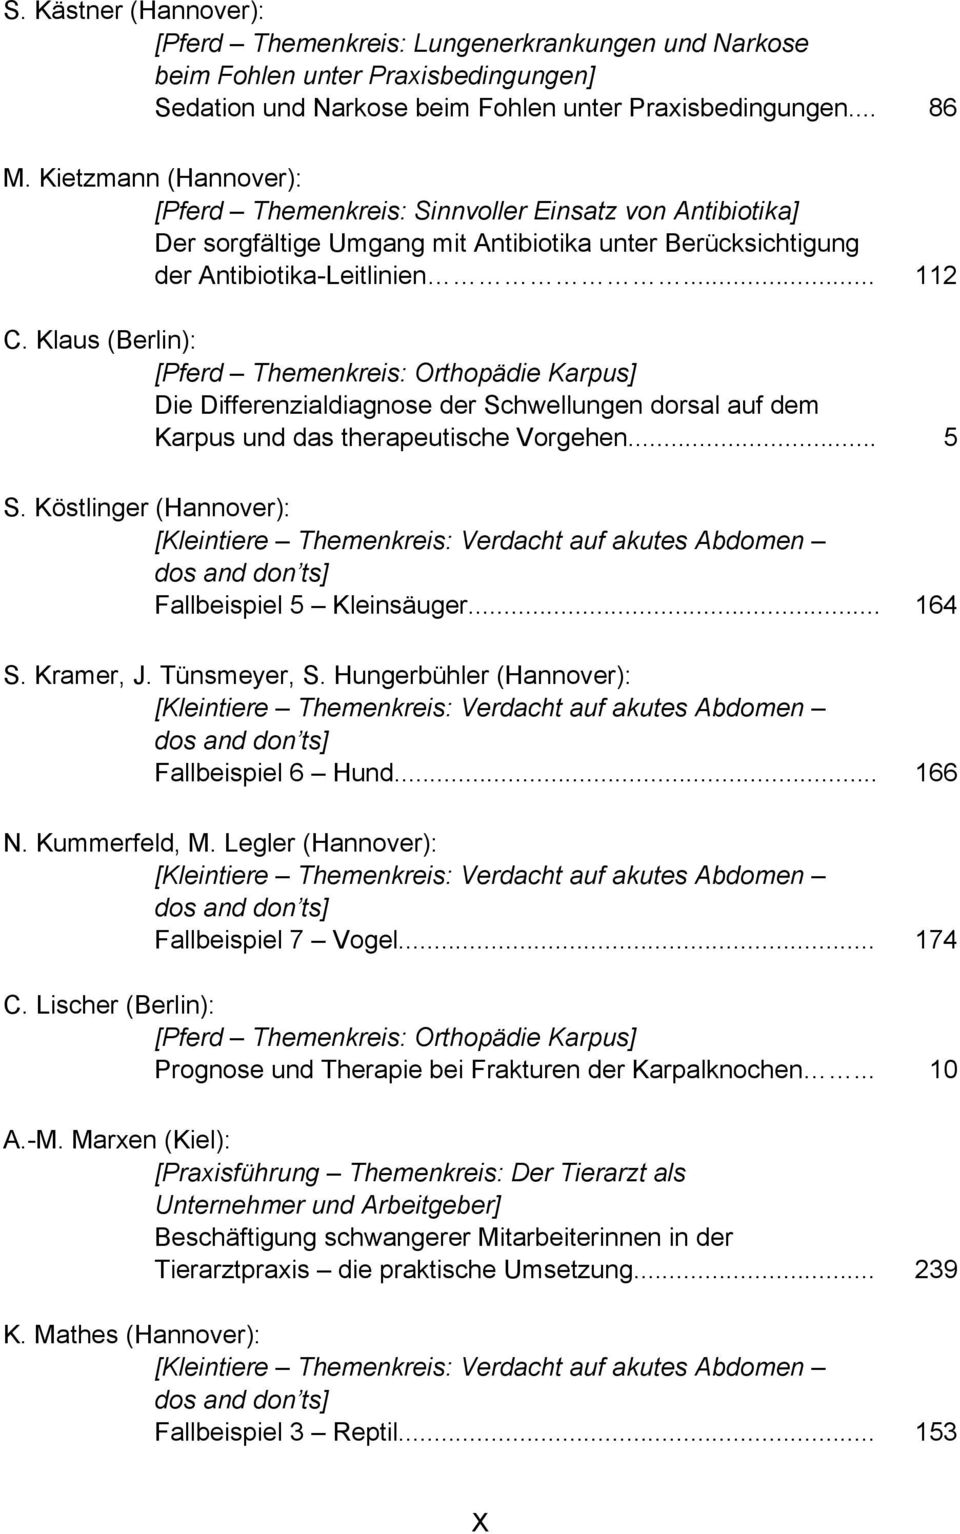 Klaus (Berlin): Die Differenzialdiagnose der Schwellungen dorsal auf dem Karpus und das therapeutische Vorgehen... 5 S. Köstlinger (Hannover): Fallbeispiel 5 Kleinsäuger... 164 S. Kramer, J.